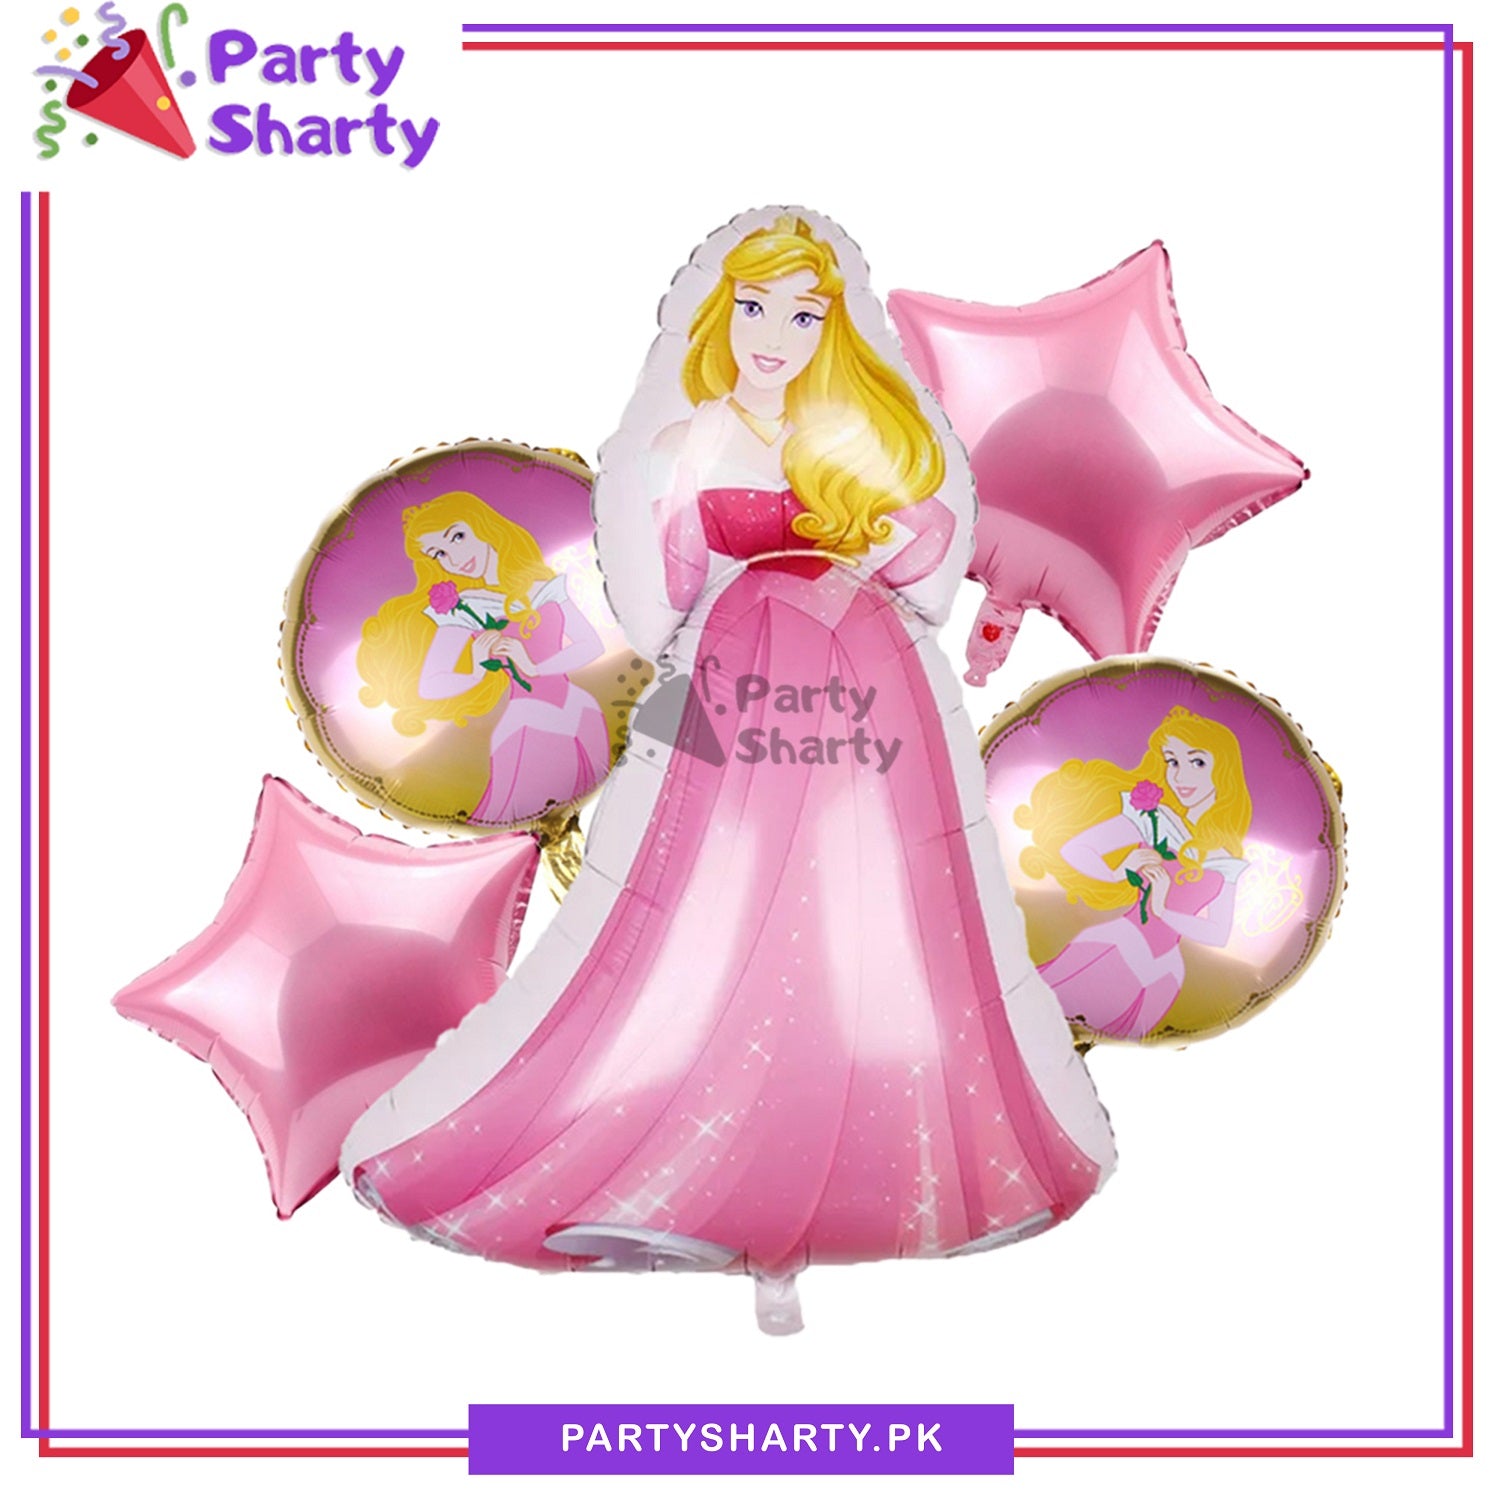 5pcs/set D2 Princess Aurora Foil Balloons For Princess Theme Party Decoration and Celebration